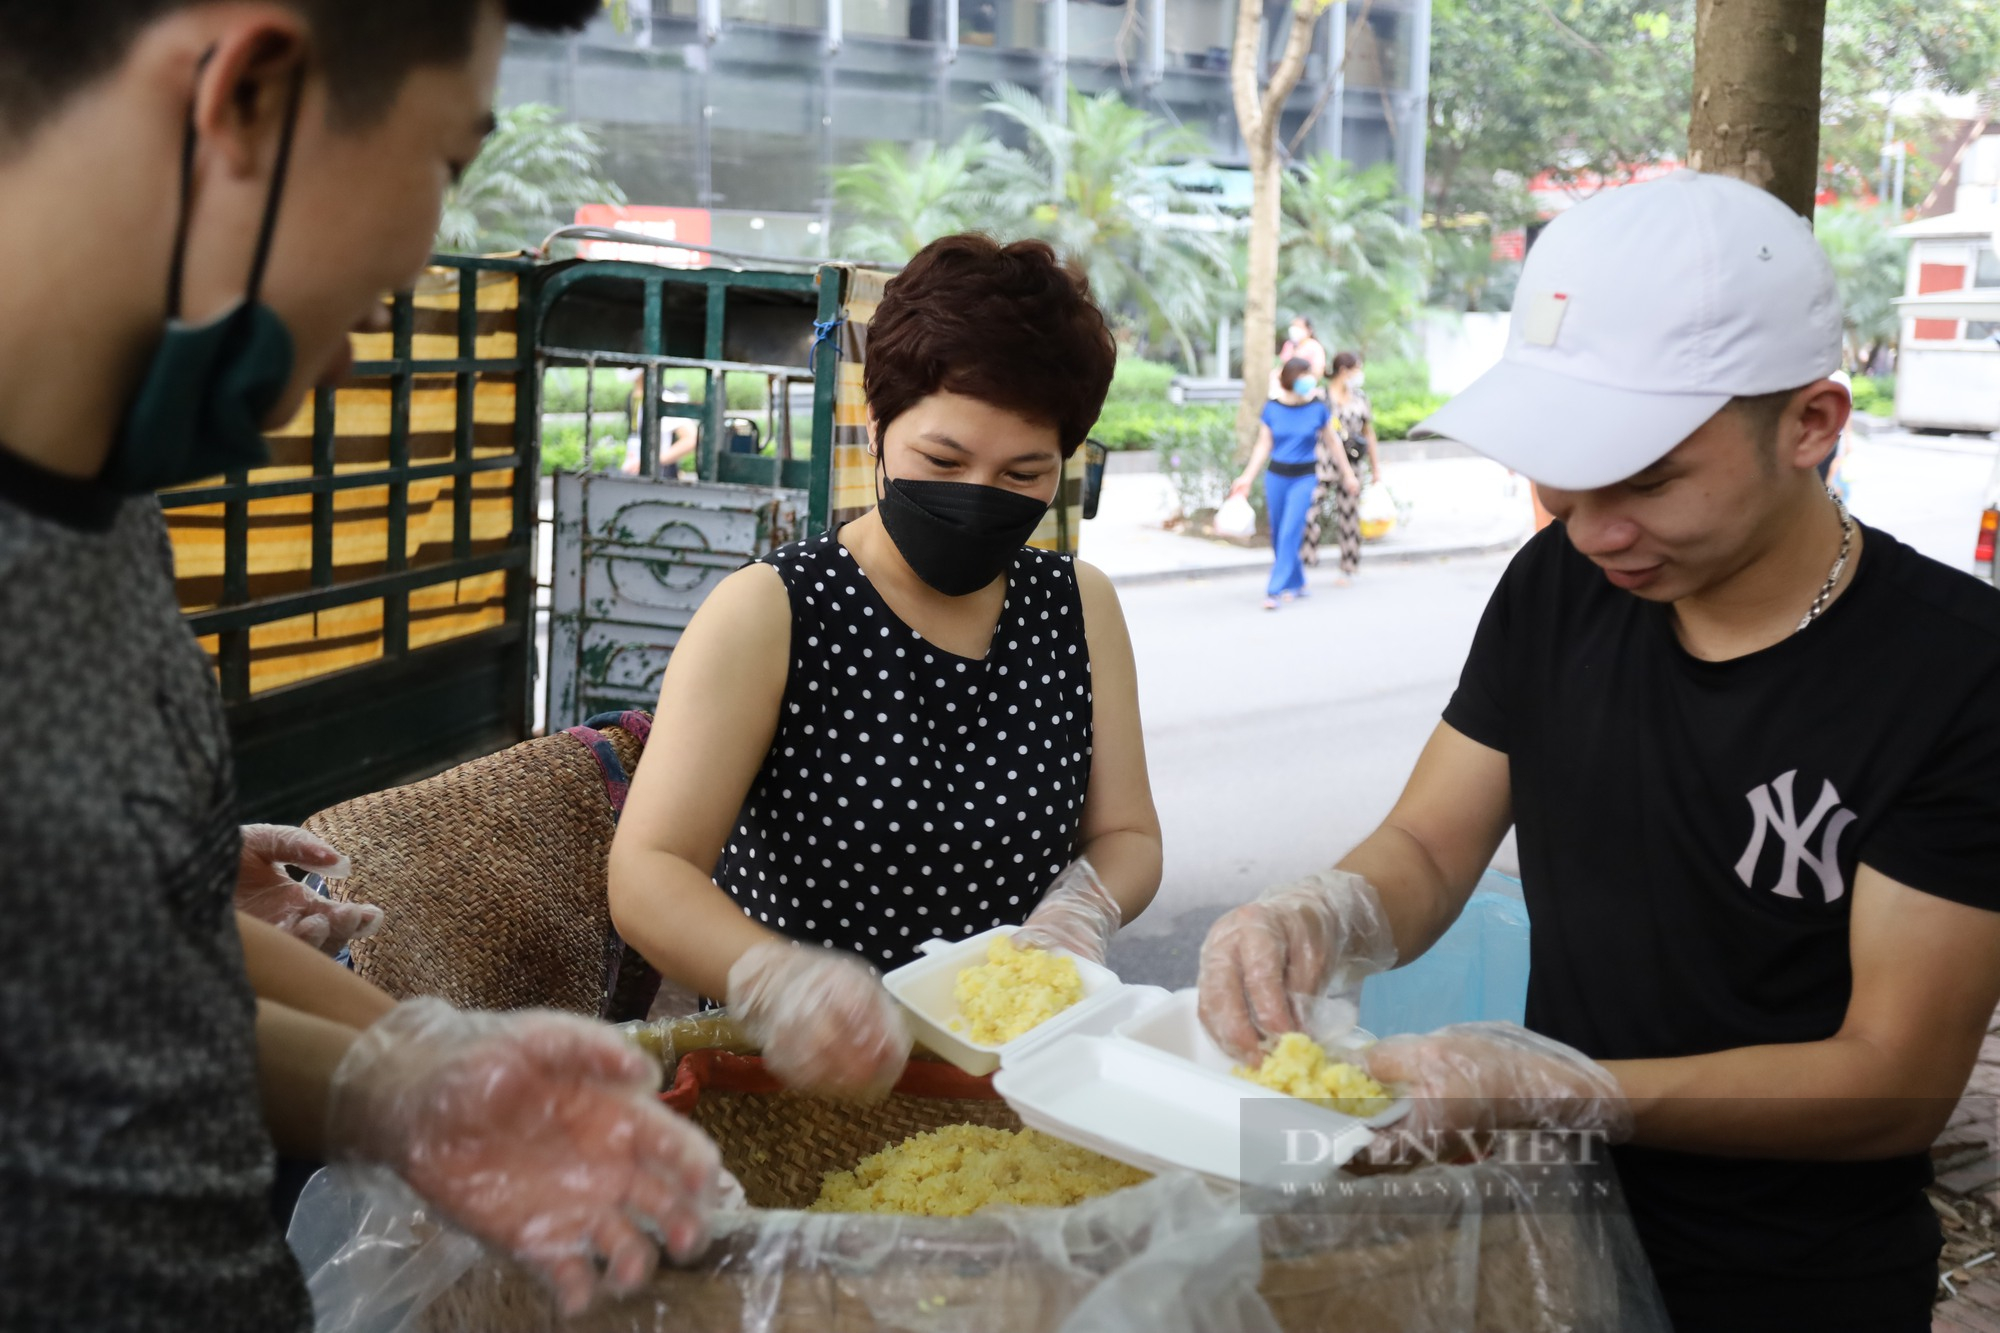 Báo Dân Việt tiếp tục hỗ trợ 1000 bệnh nhân nghèo bữa sáng miễn phí  - Ảnh 3.